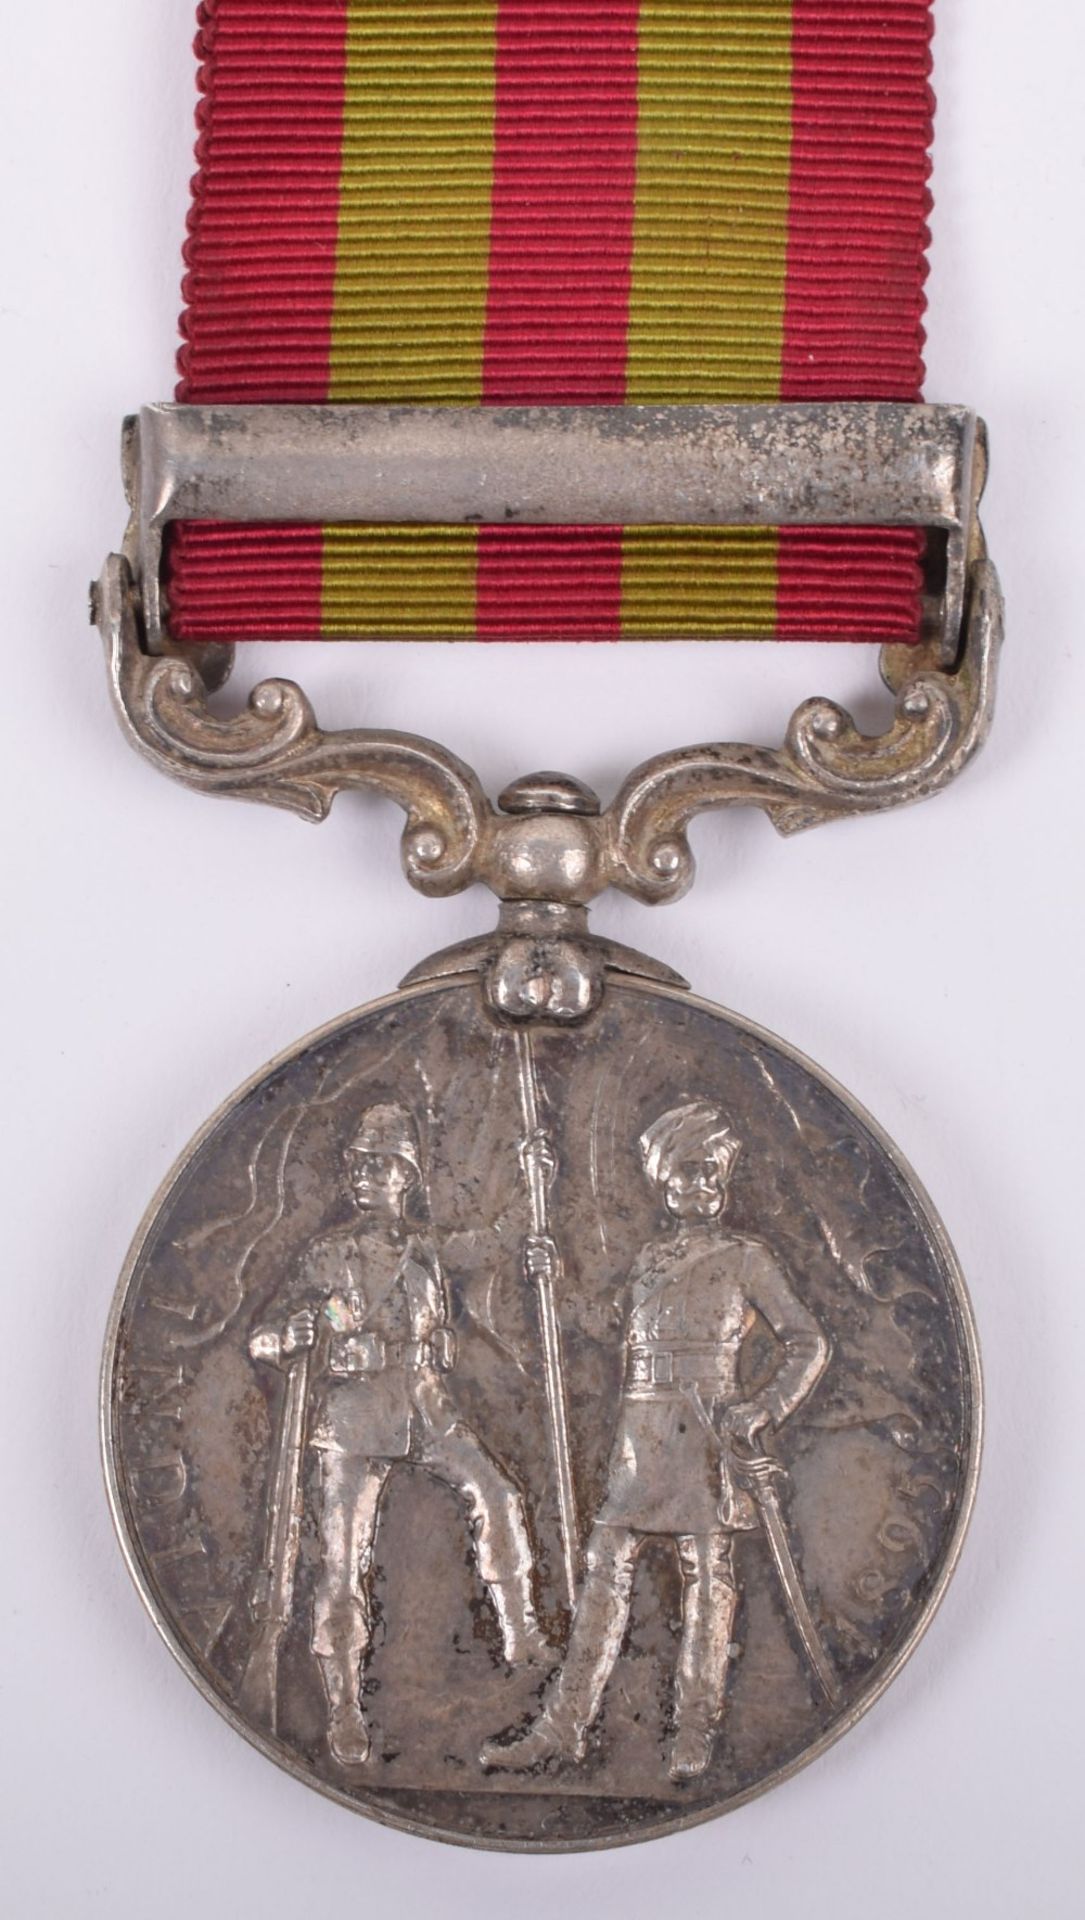 Indian General Service Medal 1895-1902 Seaforth Highlanders - Image 5 of 6